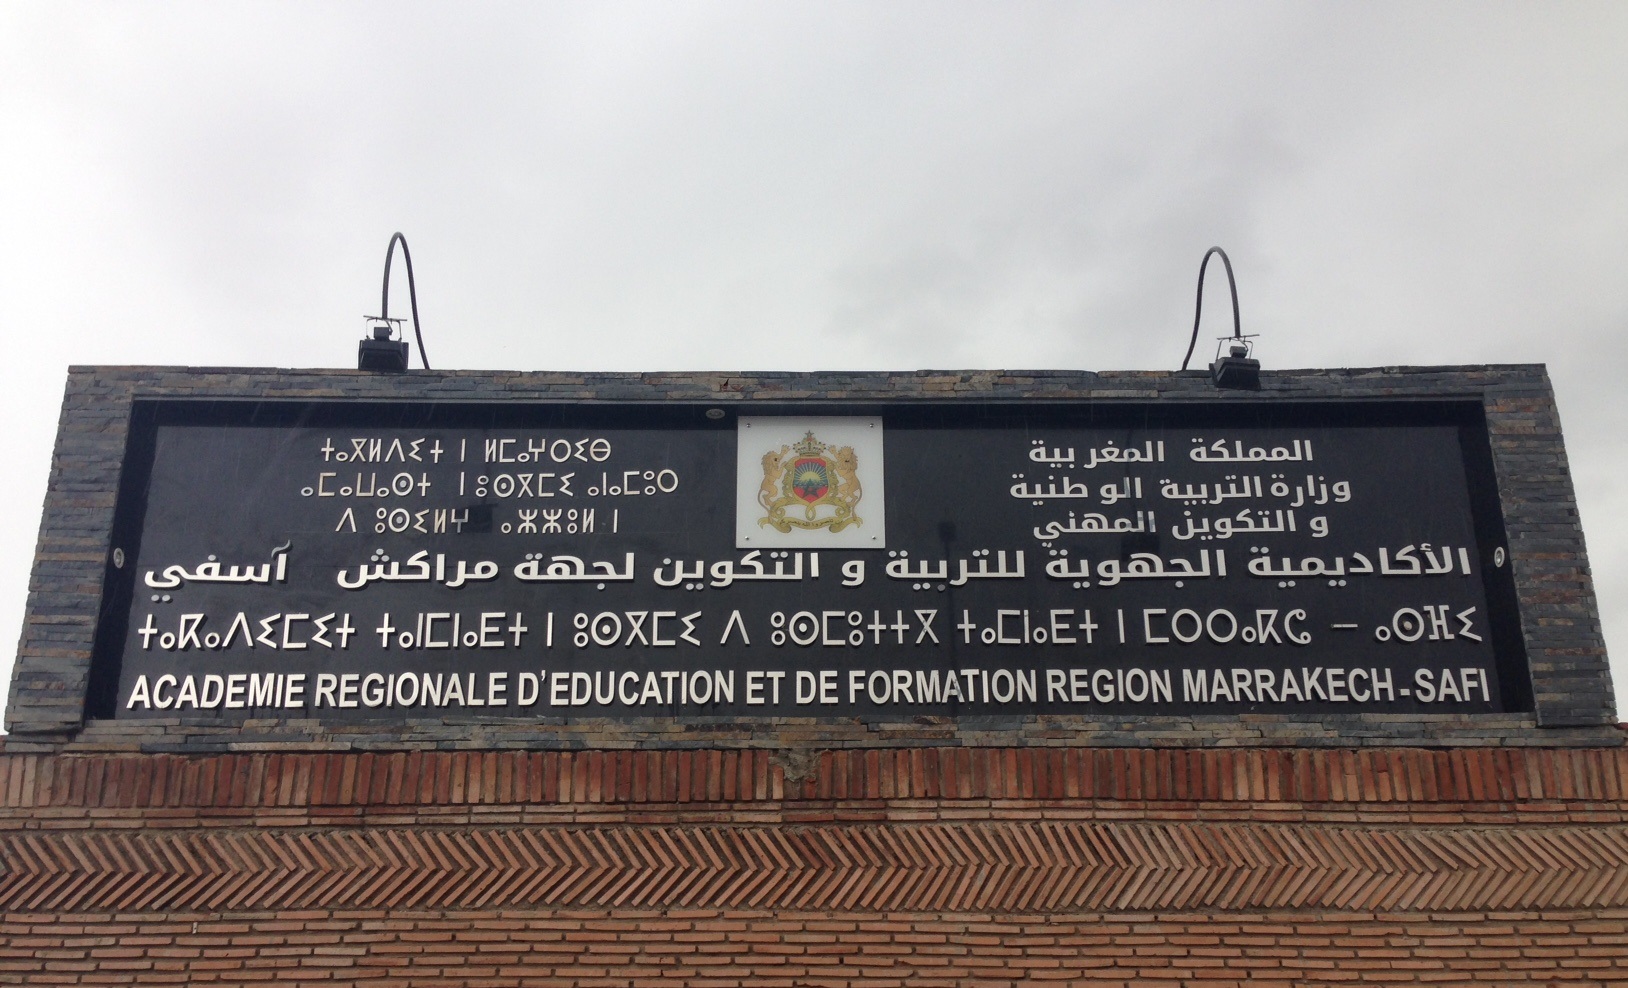 كورونا يُغلق 3 مؤسسات تعليمية بجهة مراكش